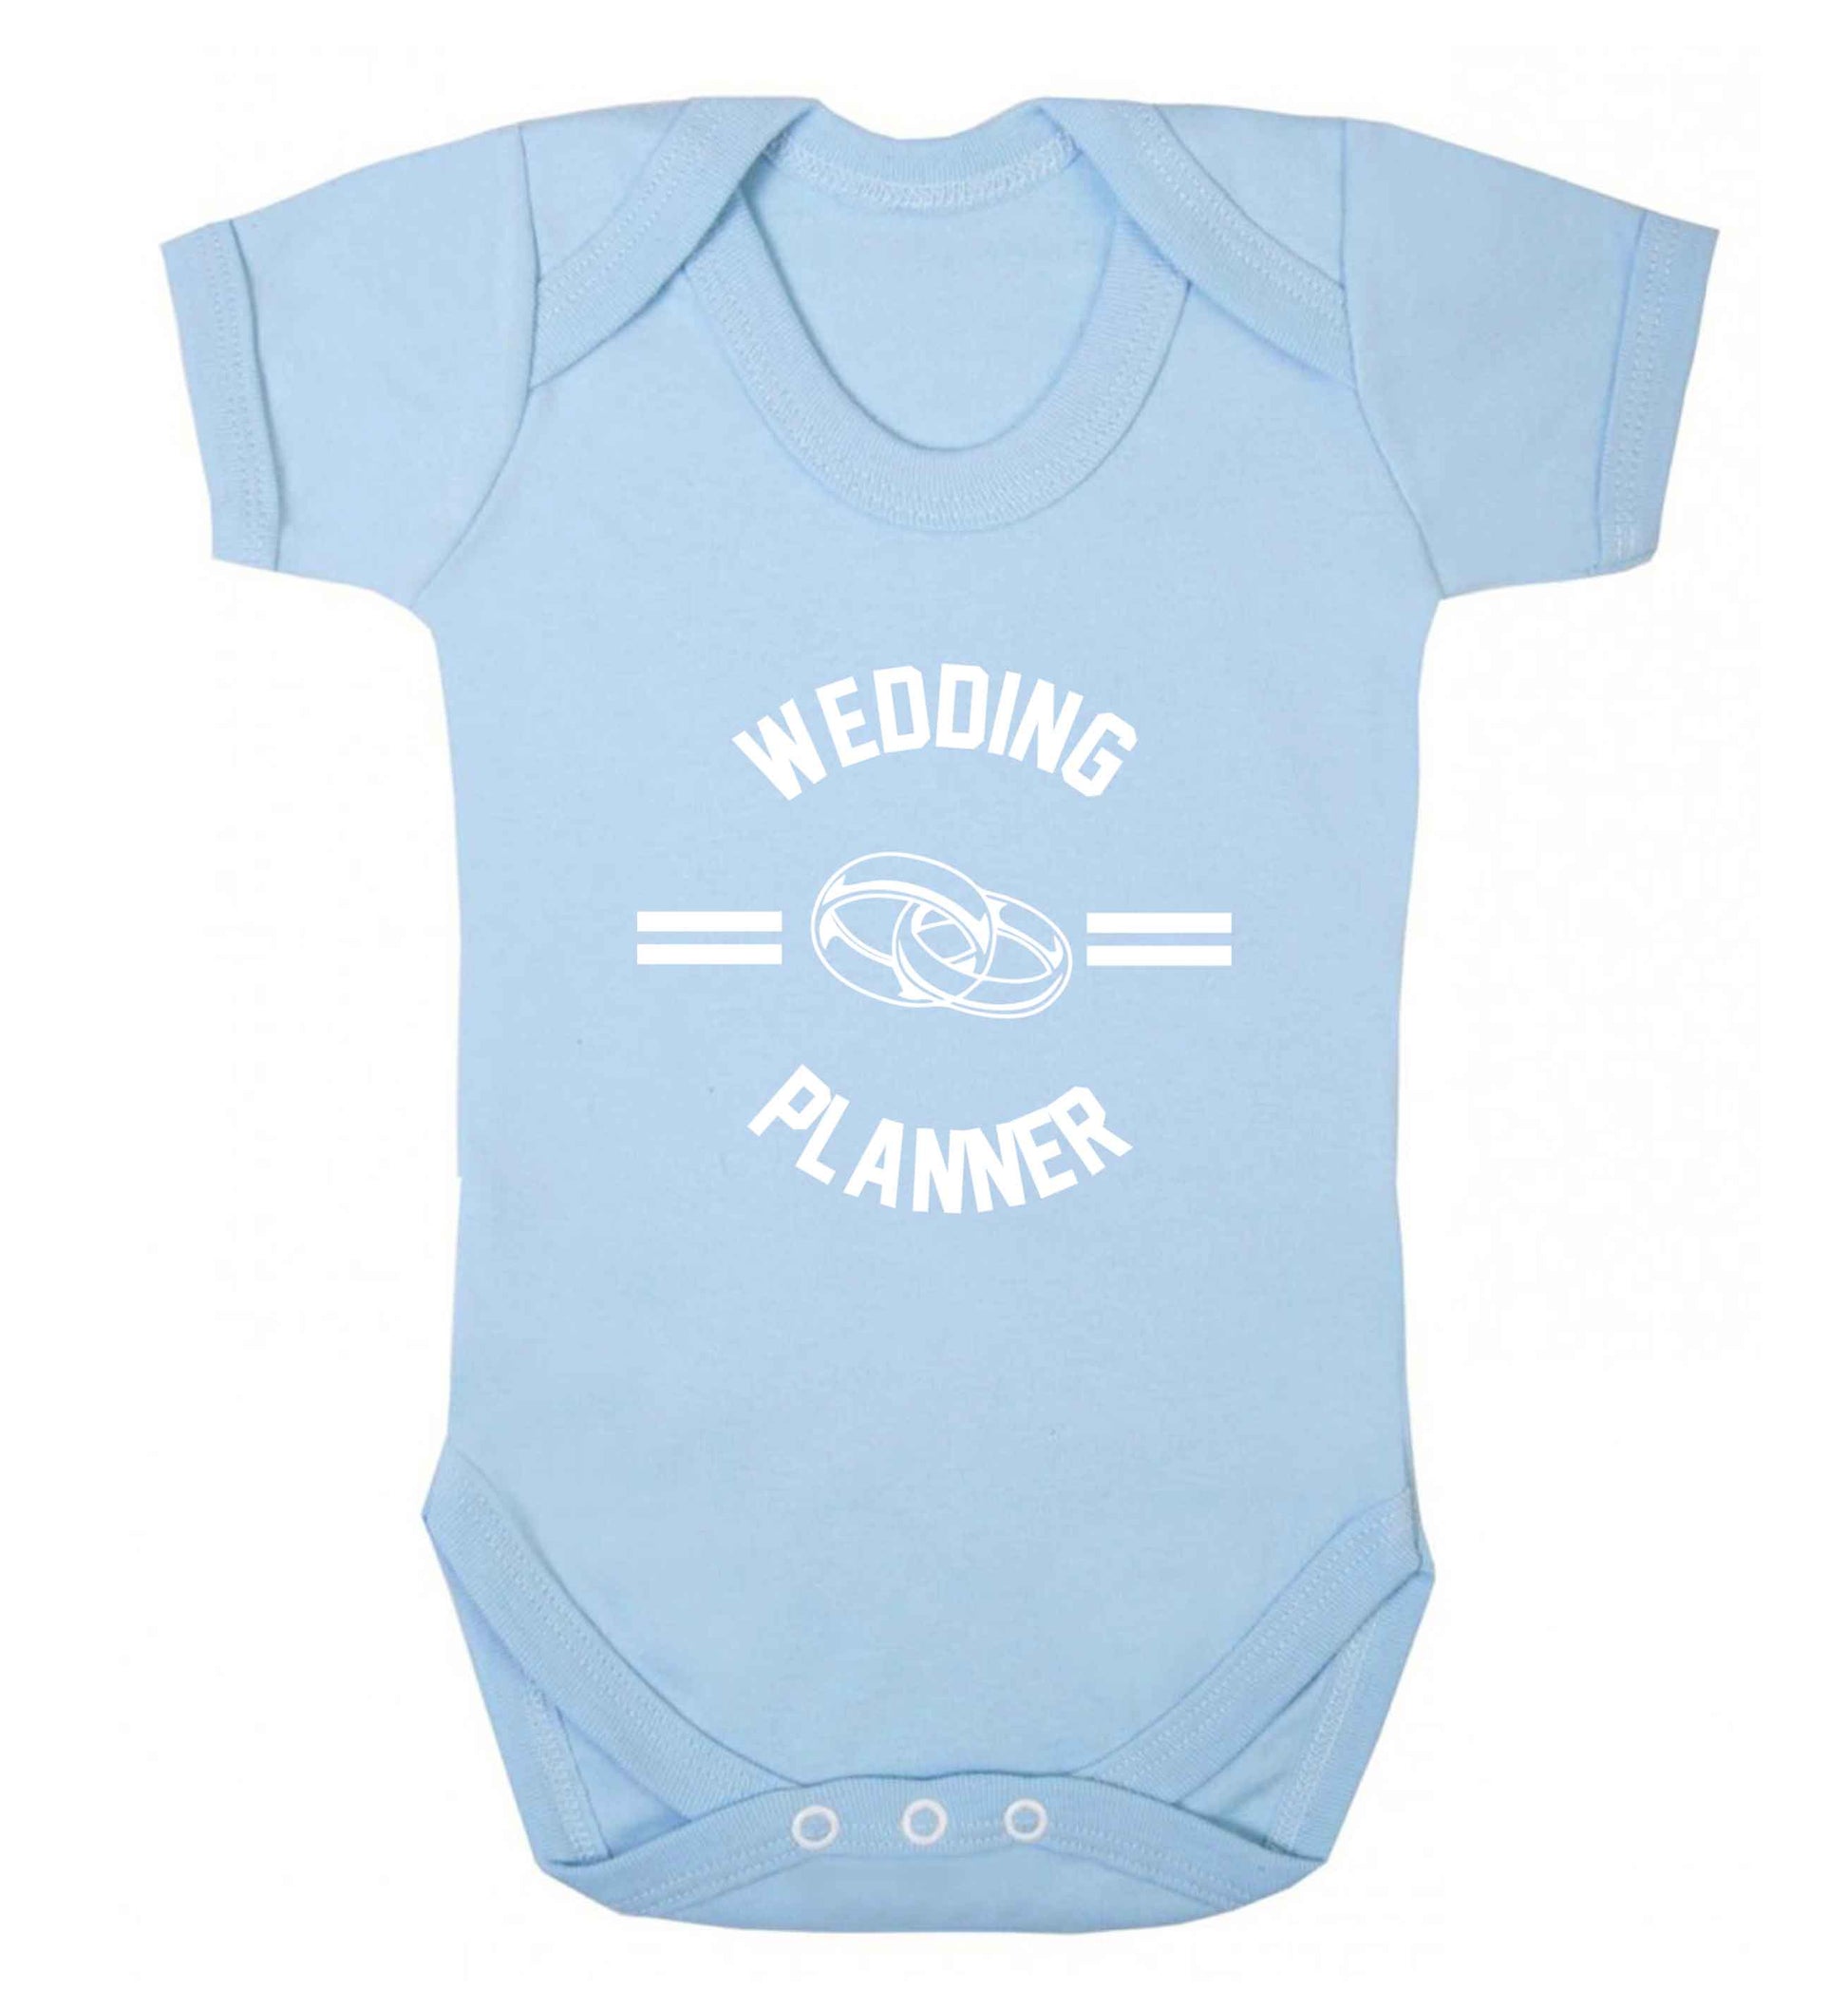 Wedding planner baby vest pale blue 18-24 months